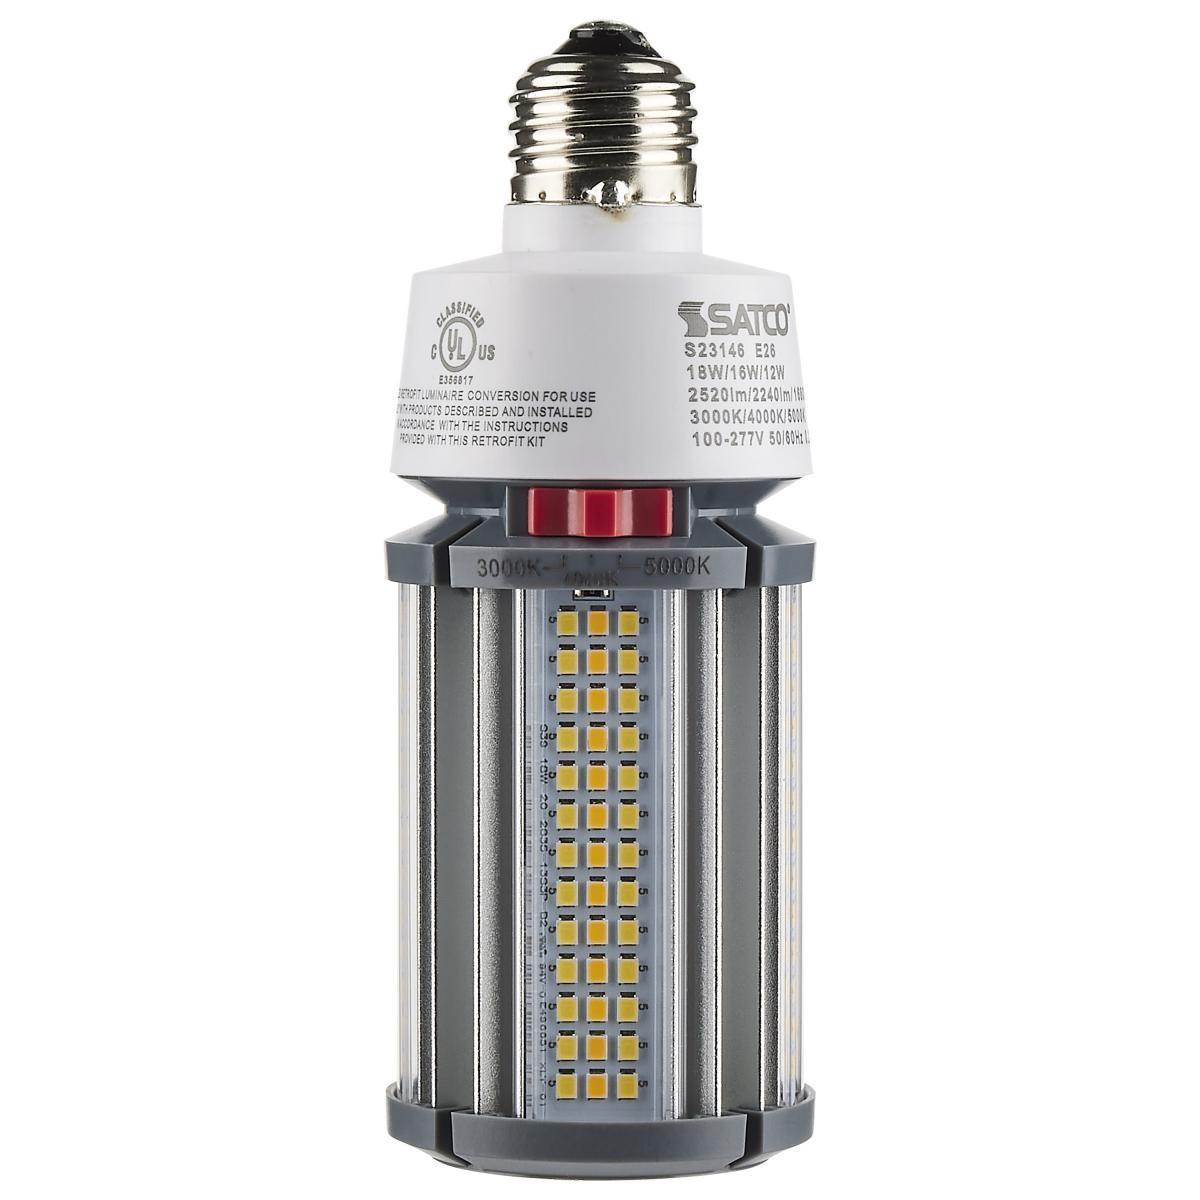 Hi-Pro Retrofit LED Corn Bulb, 18W, 2520 Lumens, Selectable CCT, 30K/40K/50K, E26 Base, 120-277V